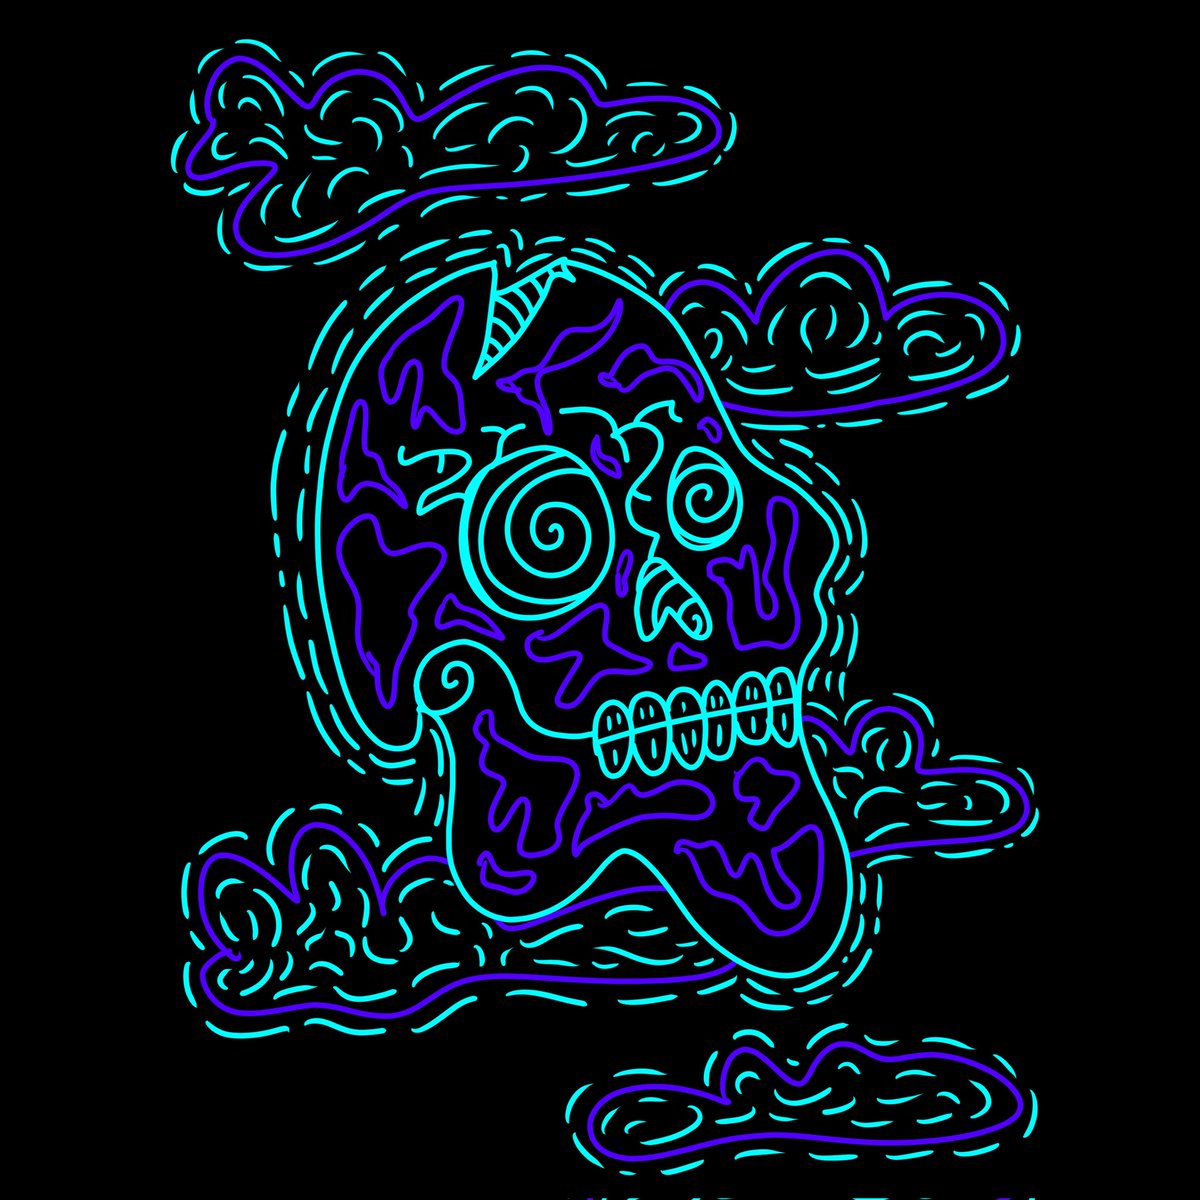 Skull And Clouds

#skullart #skullillustration
#skulldesign #neonart